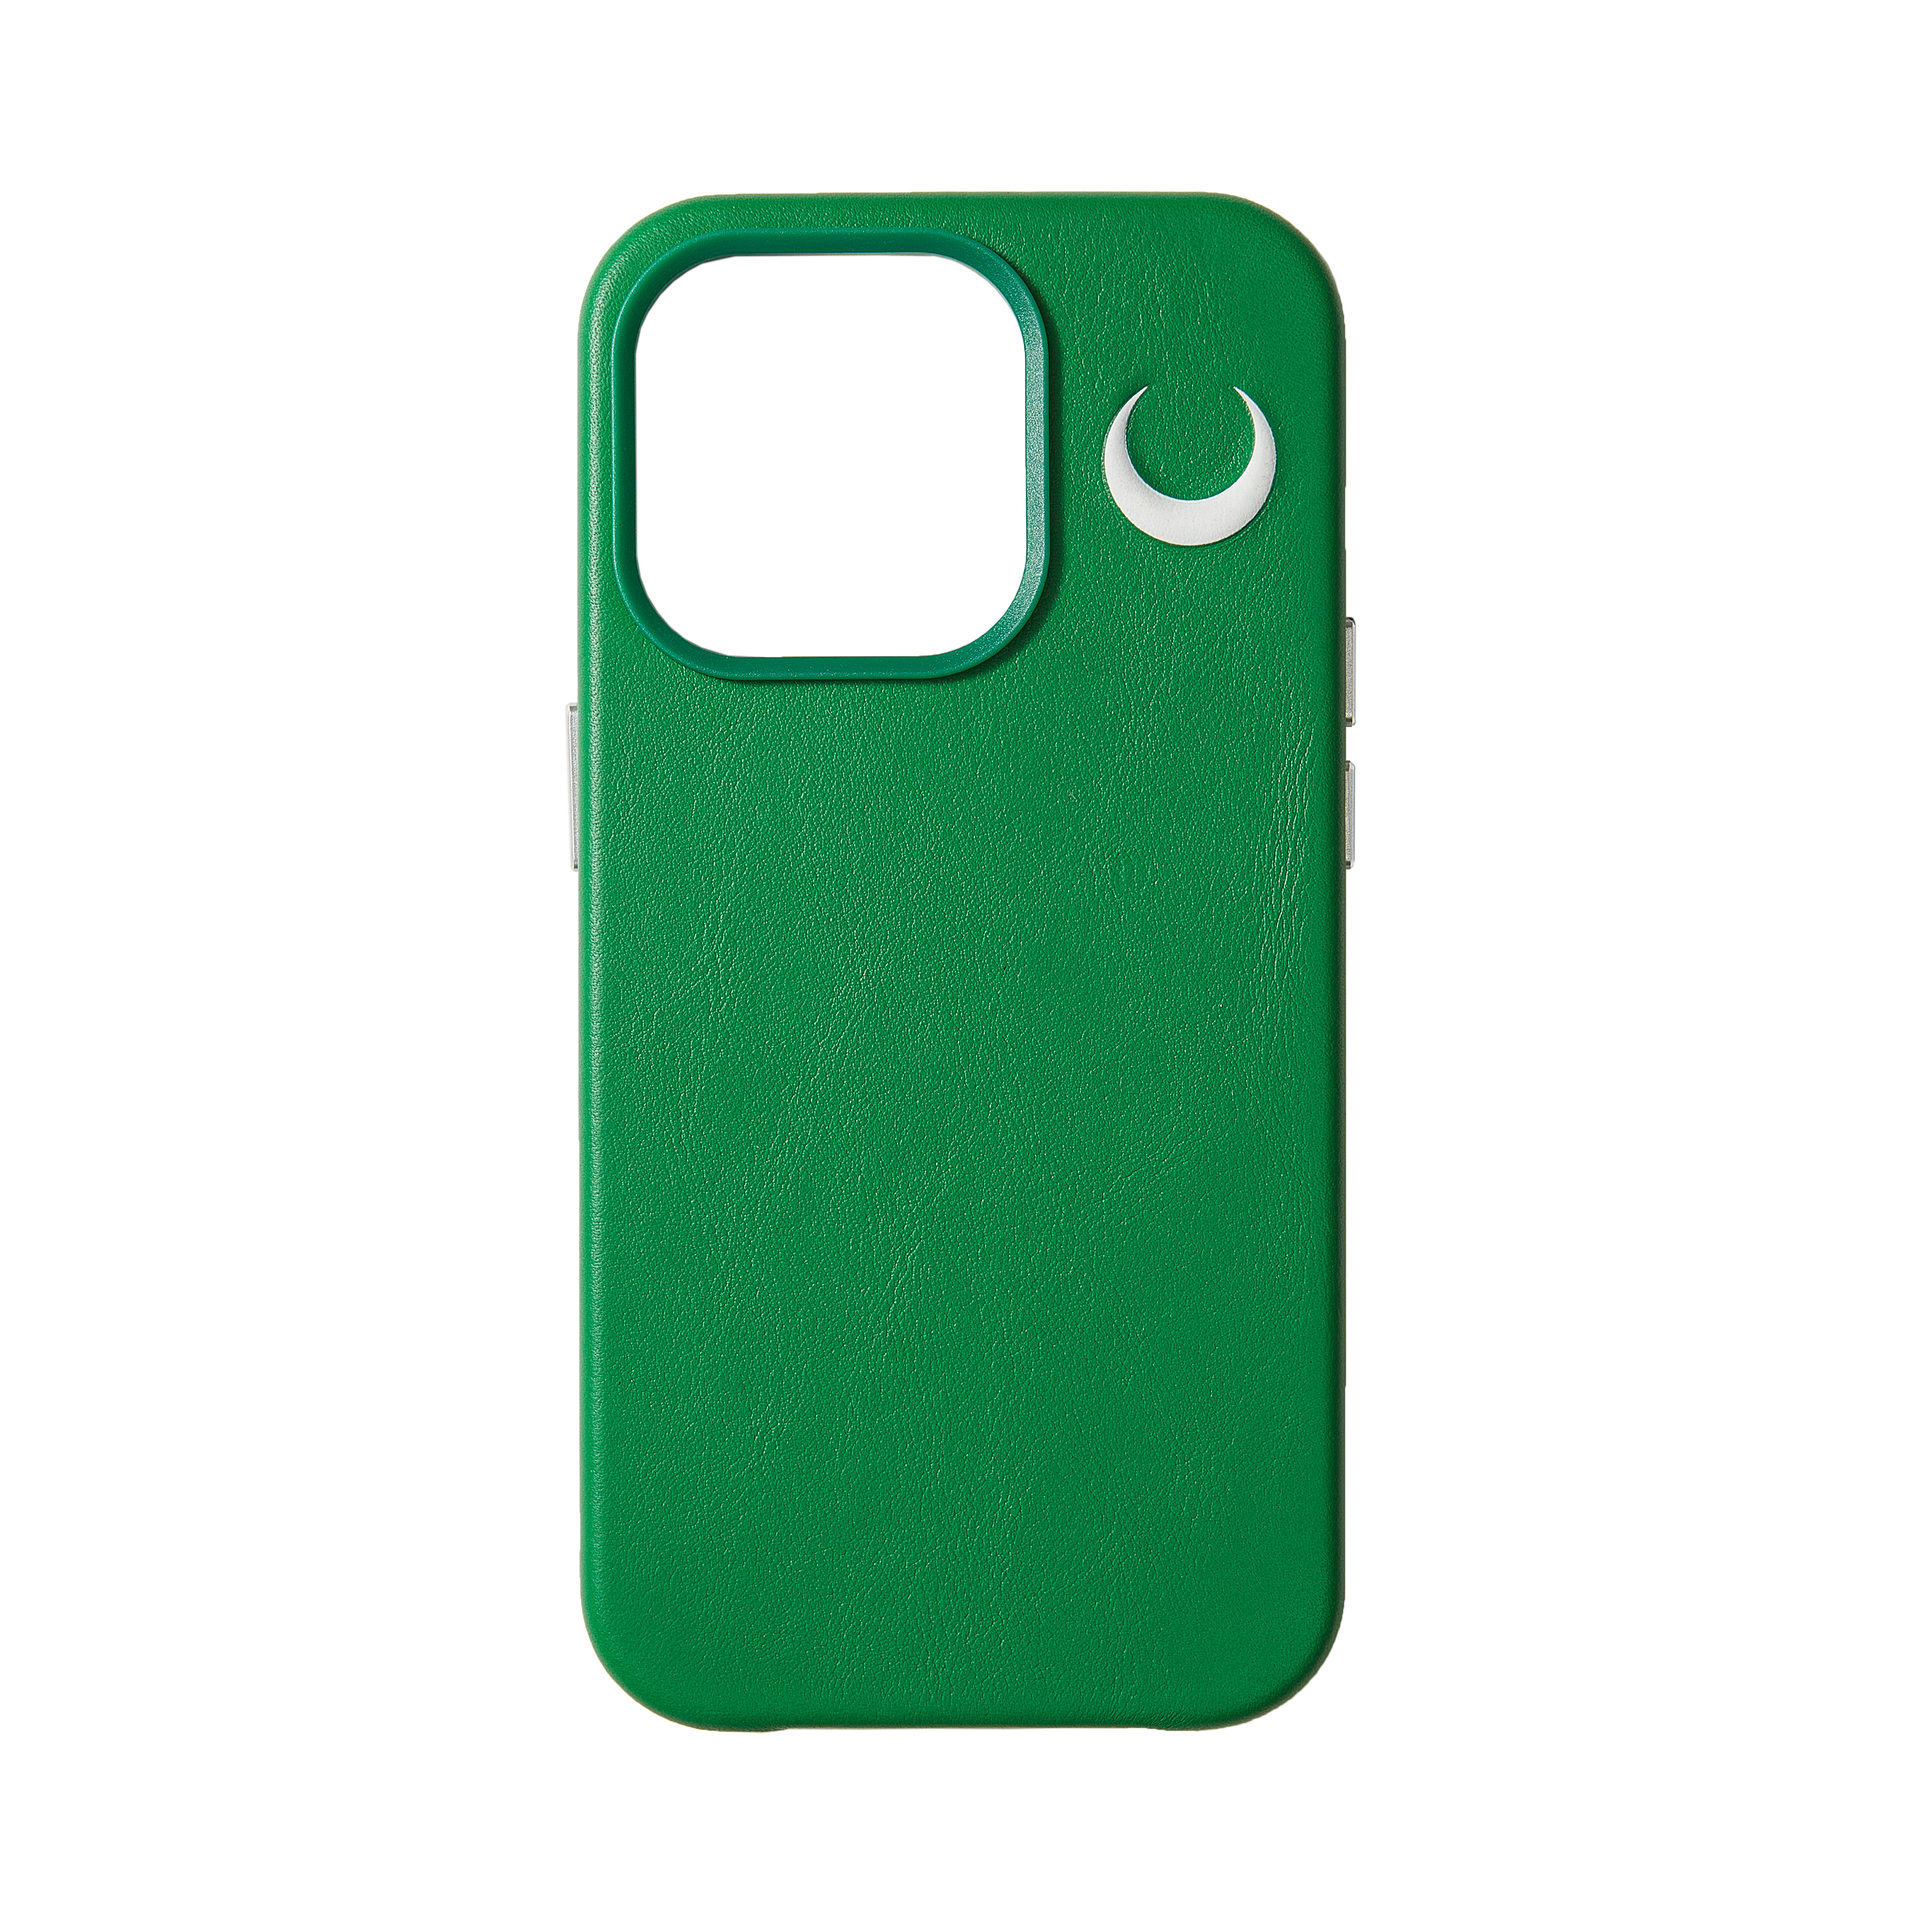 新月 压印图案 绿色 真皮  iphone  保护壳®